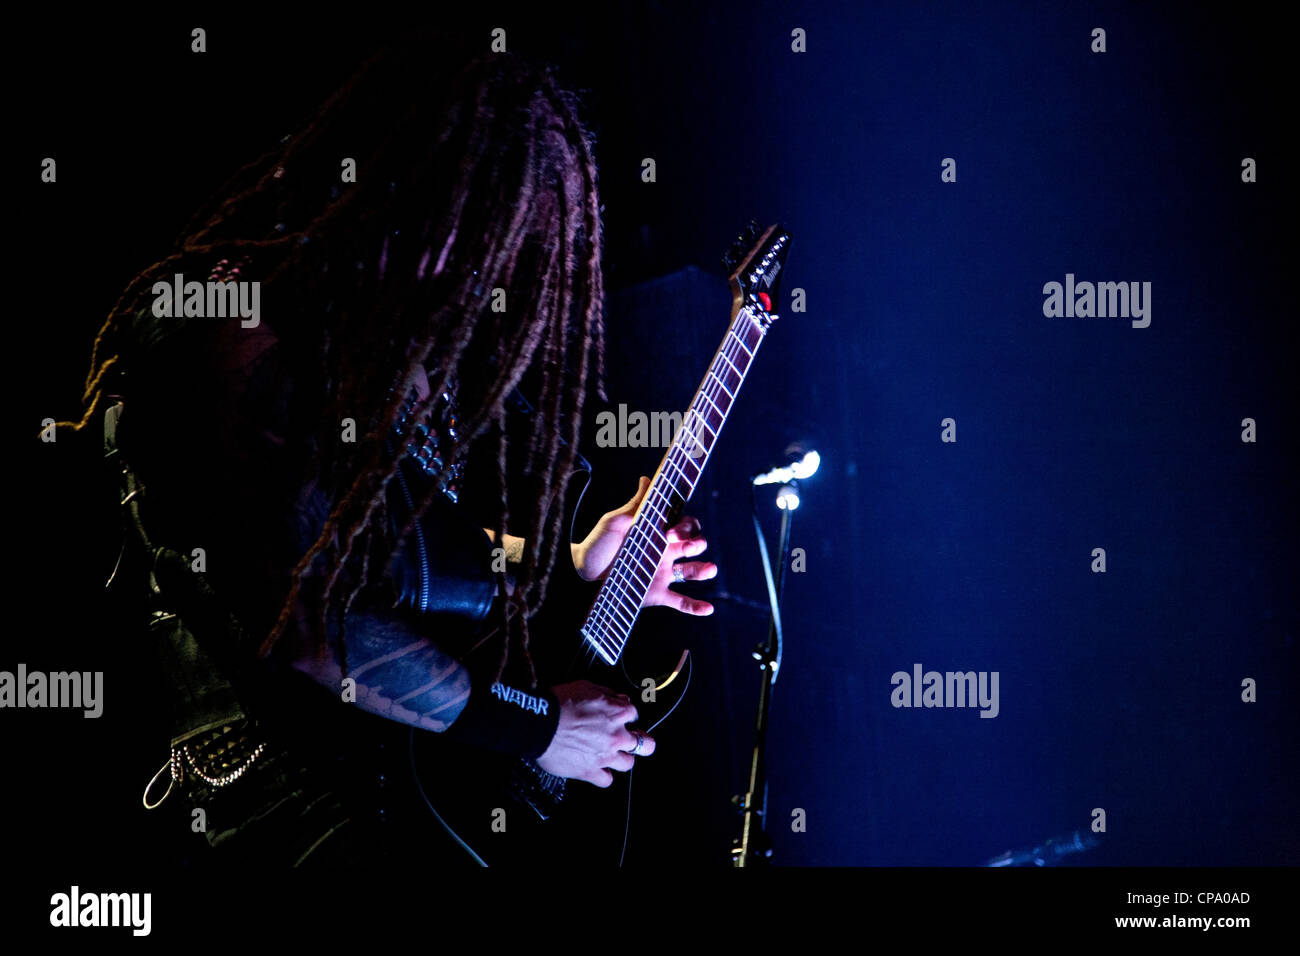 De l'Avatar guitariste de metal suédois effectue un solo de guitare rock en concert au Club Principal,Théâtre,Thessalonique GRÈCE. Banque D'Images